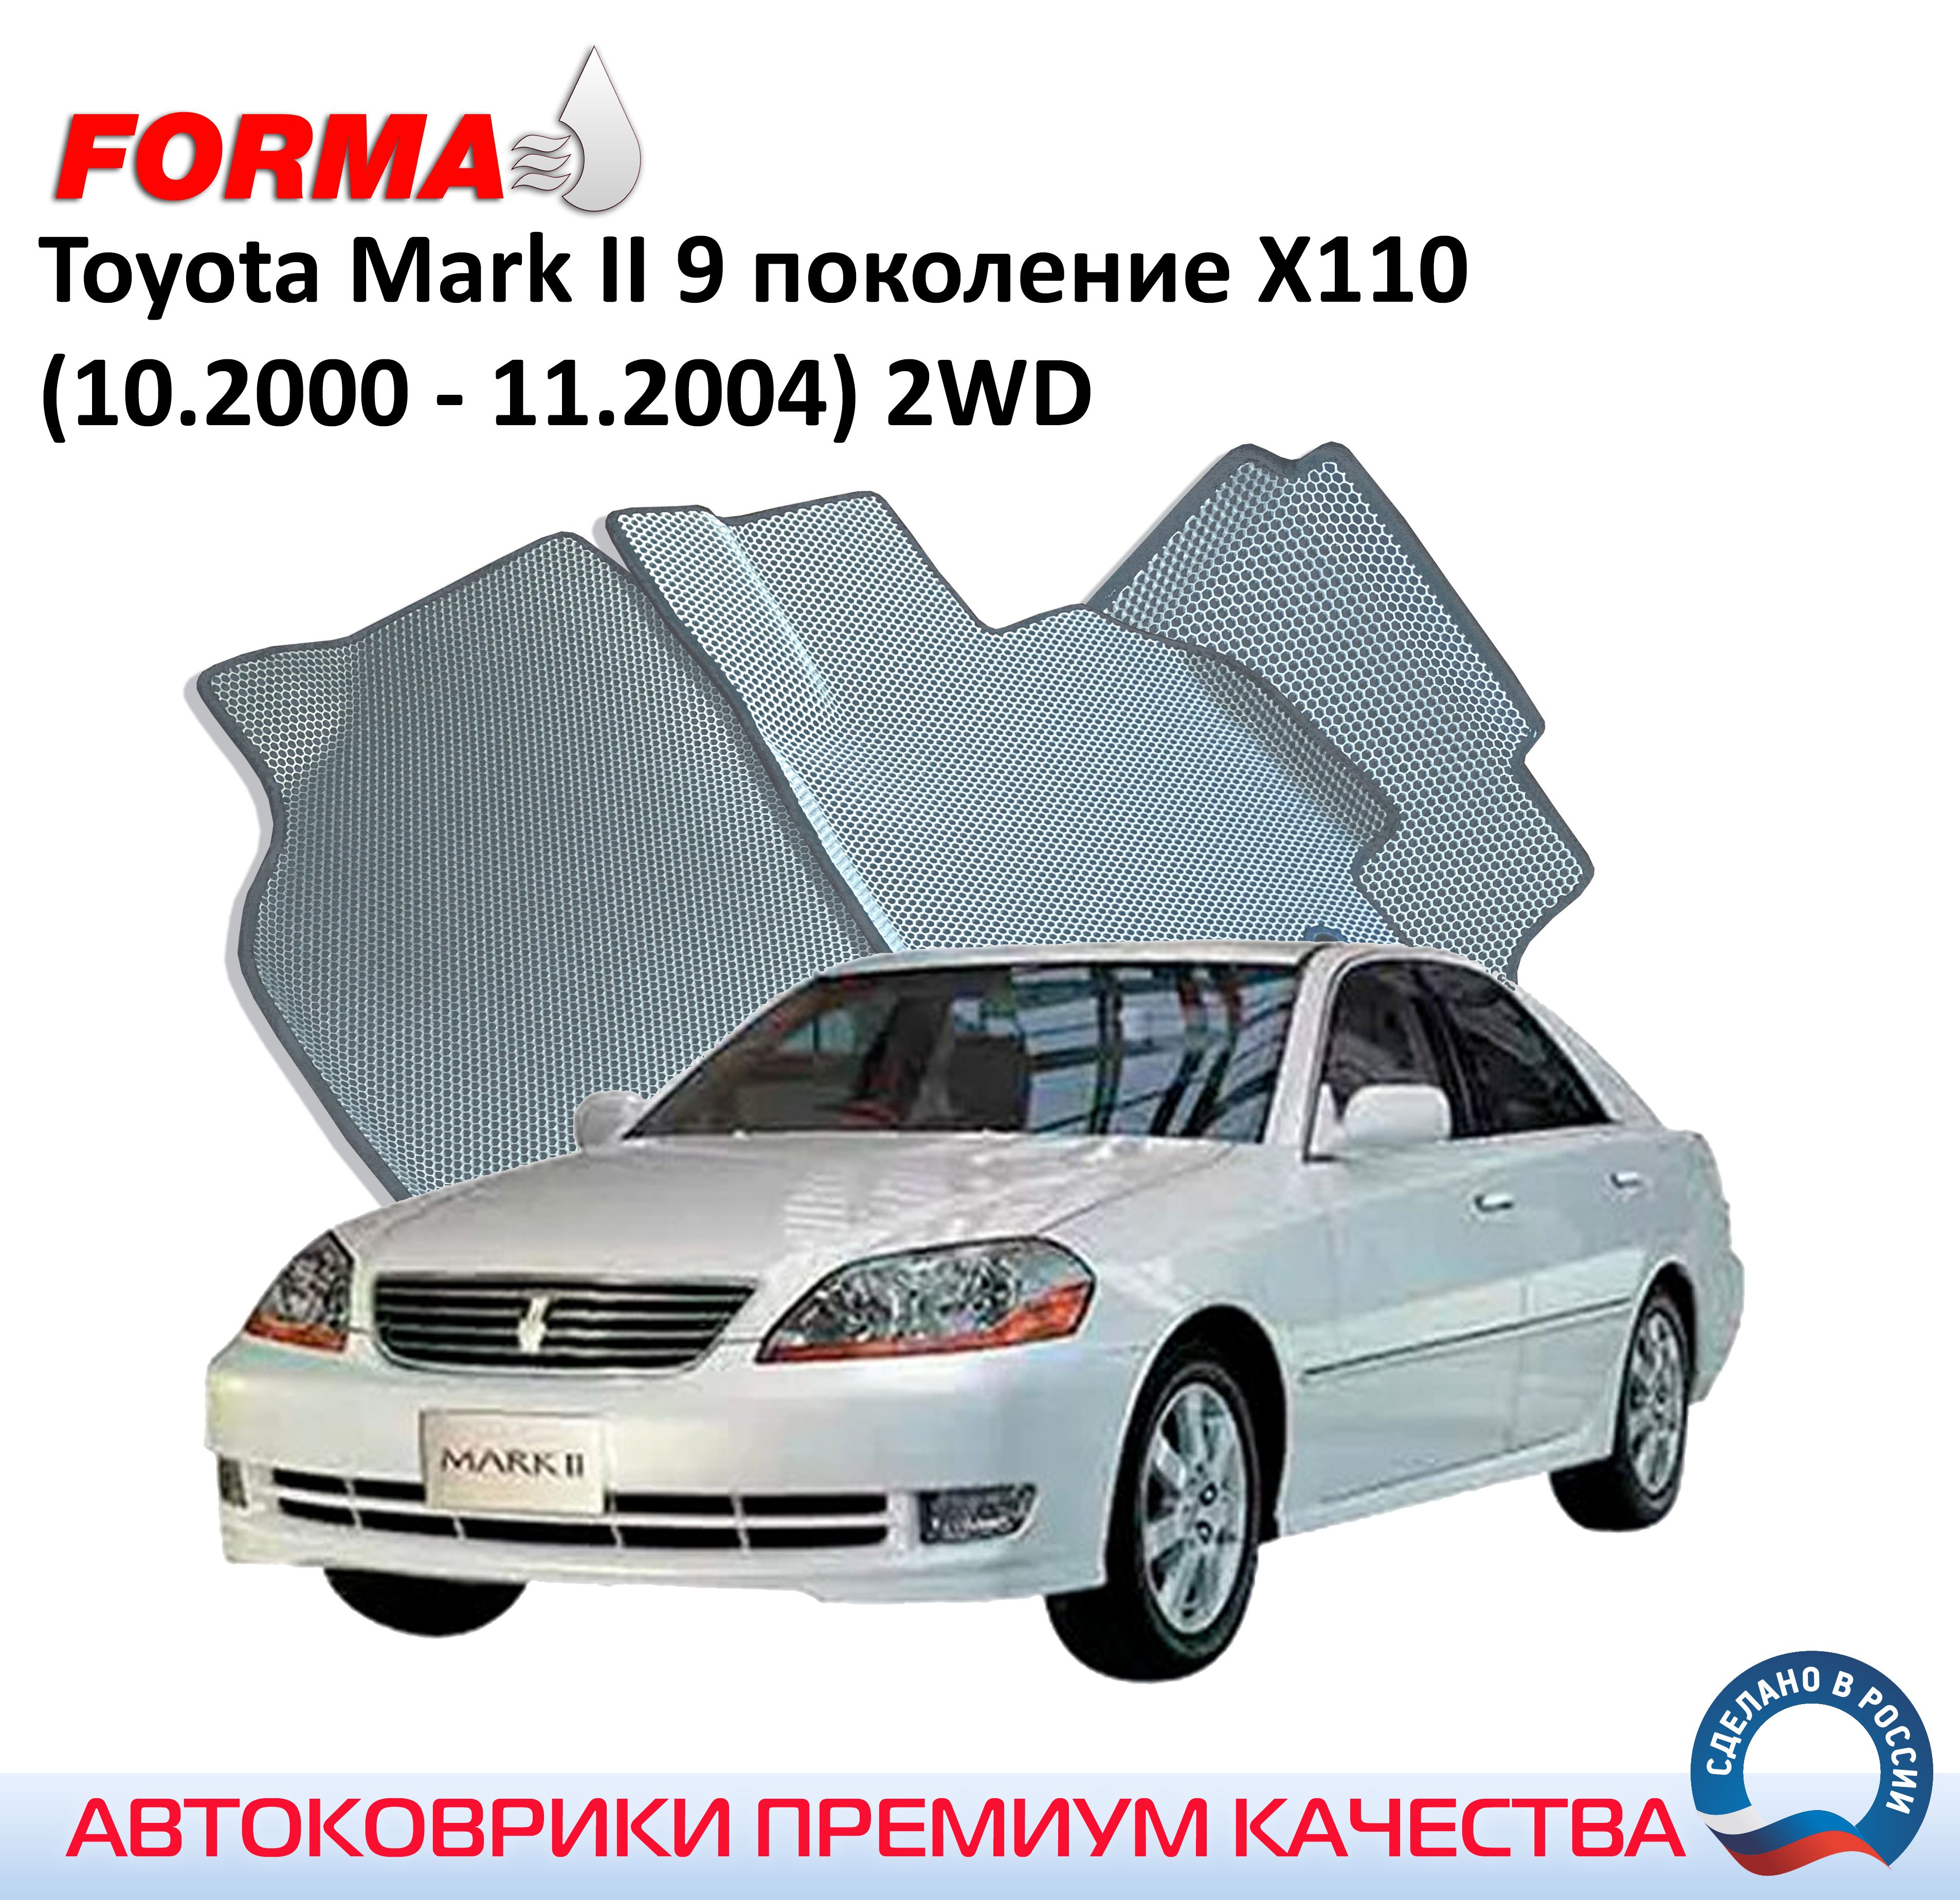 FORMA/АвтоковрикиэвавсалонToyotaMarkII9поколениеX110(10.2000-11.2004)2WDсбортами/ТойотаМарк110